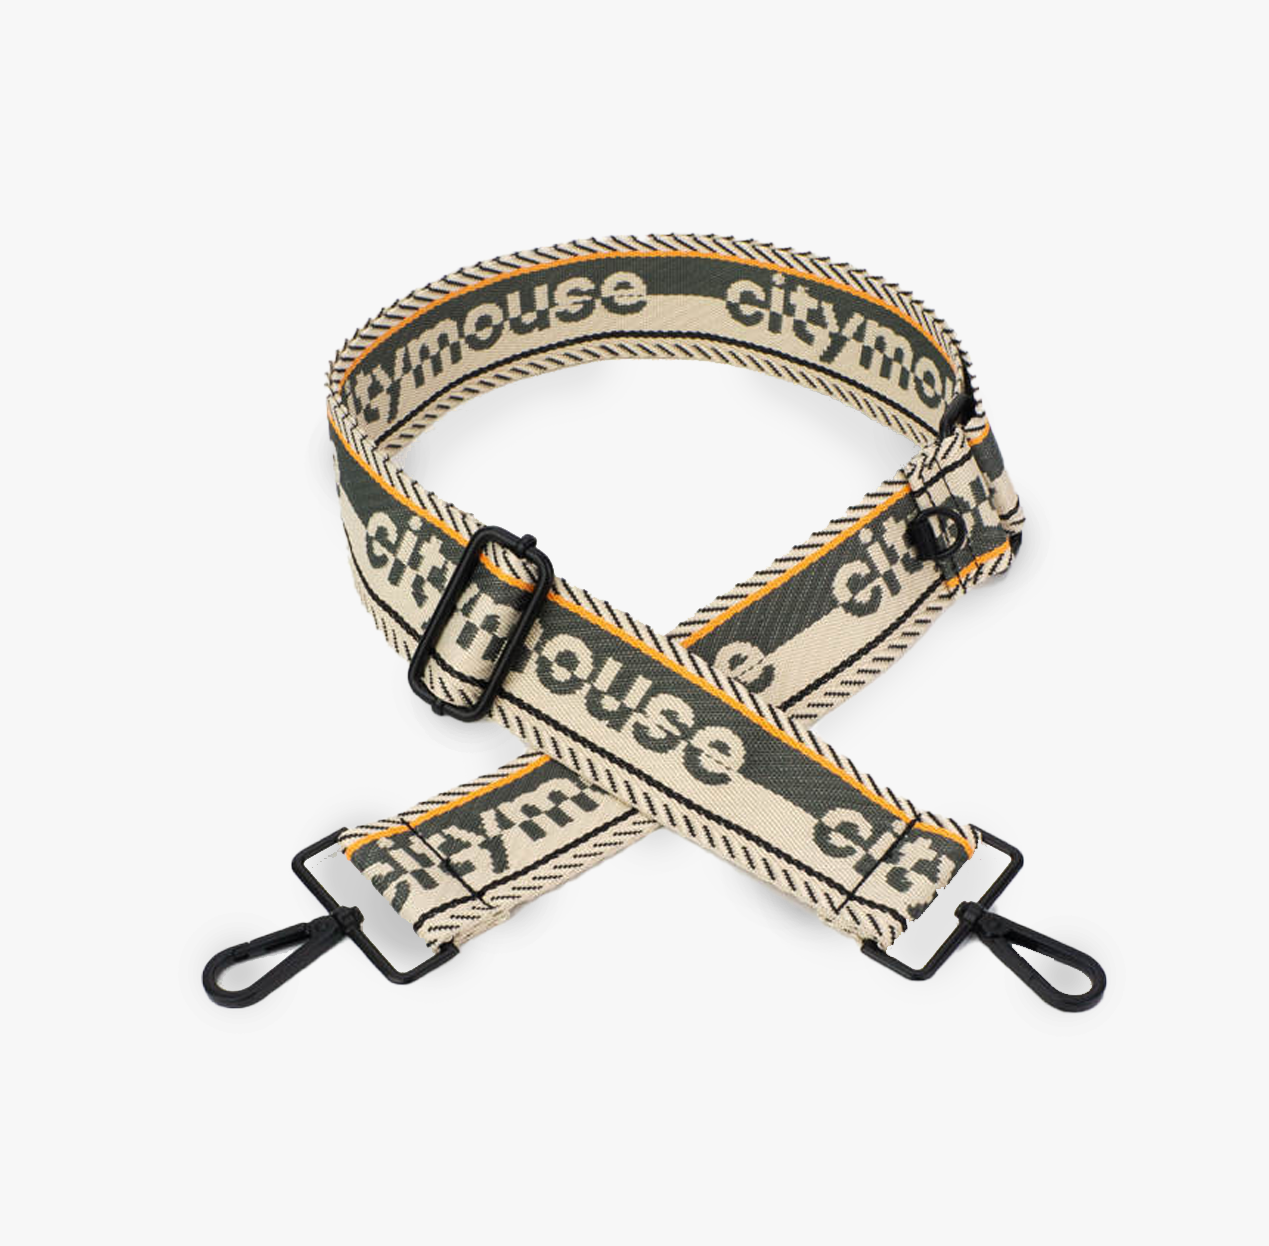 citymouse™ logo woven strap